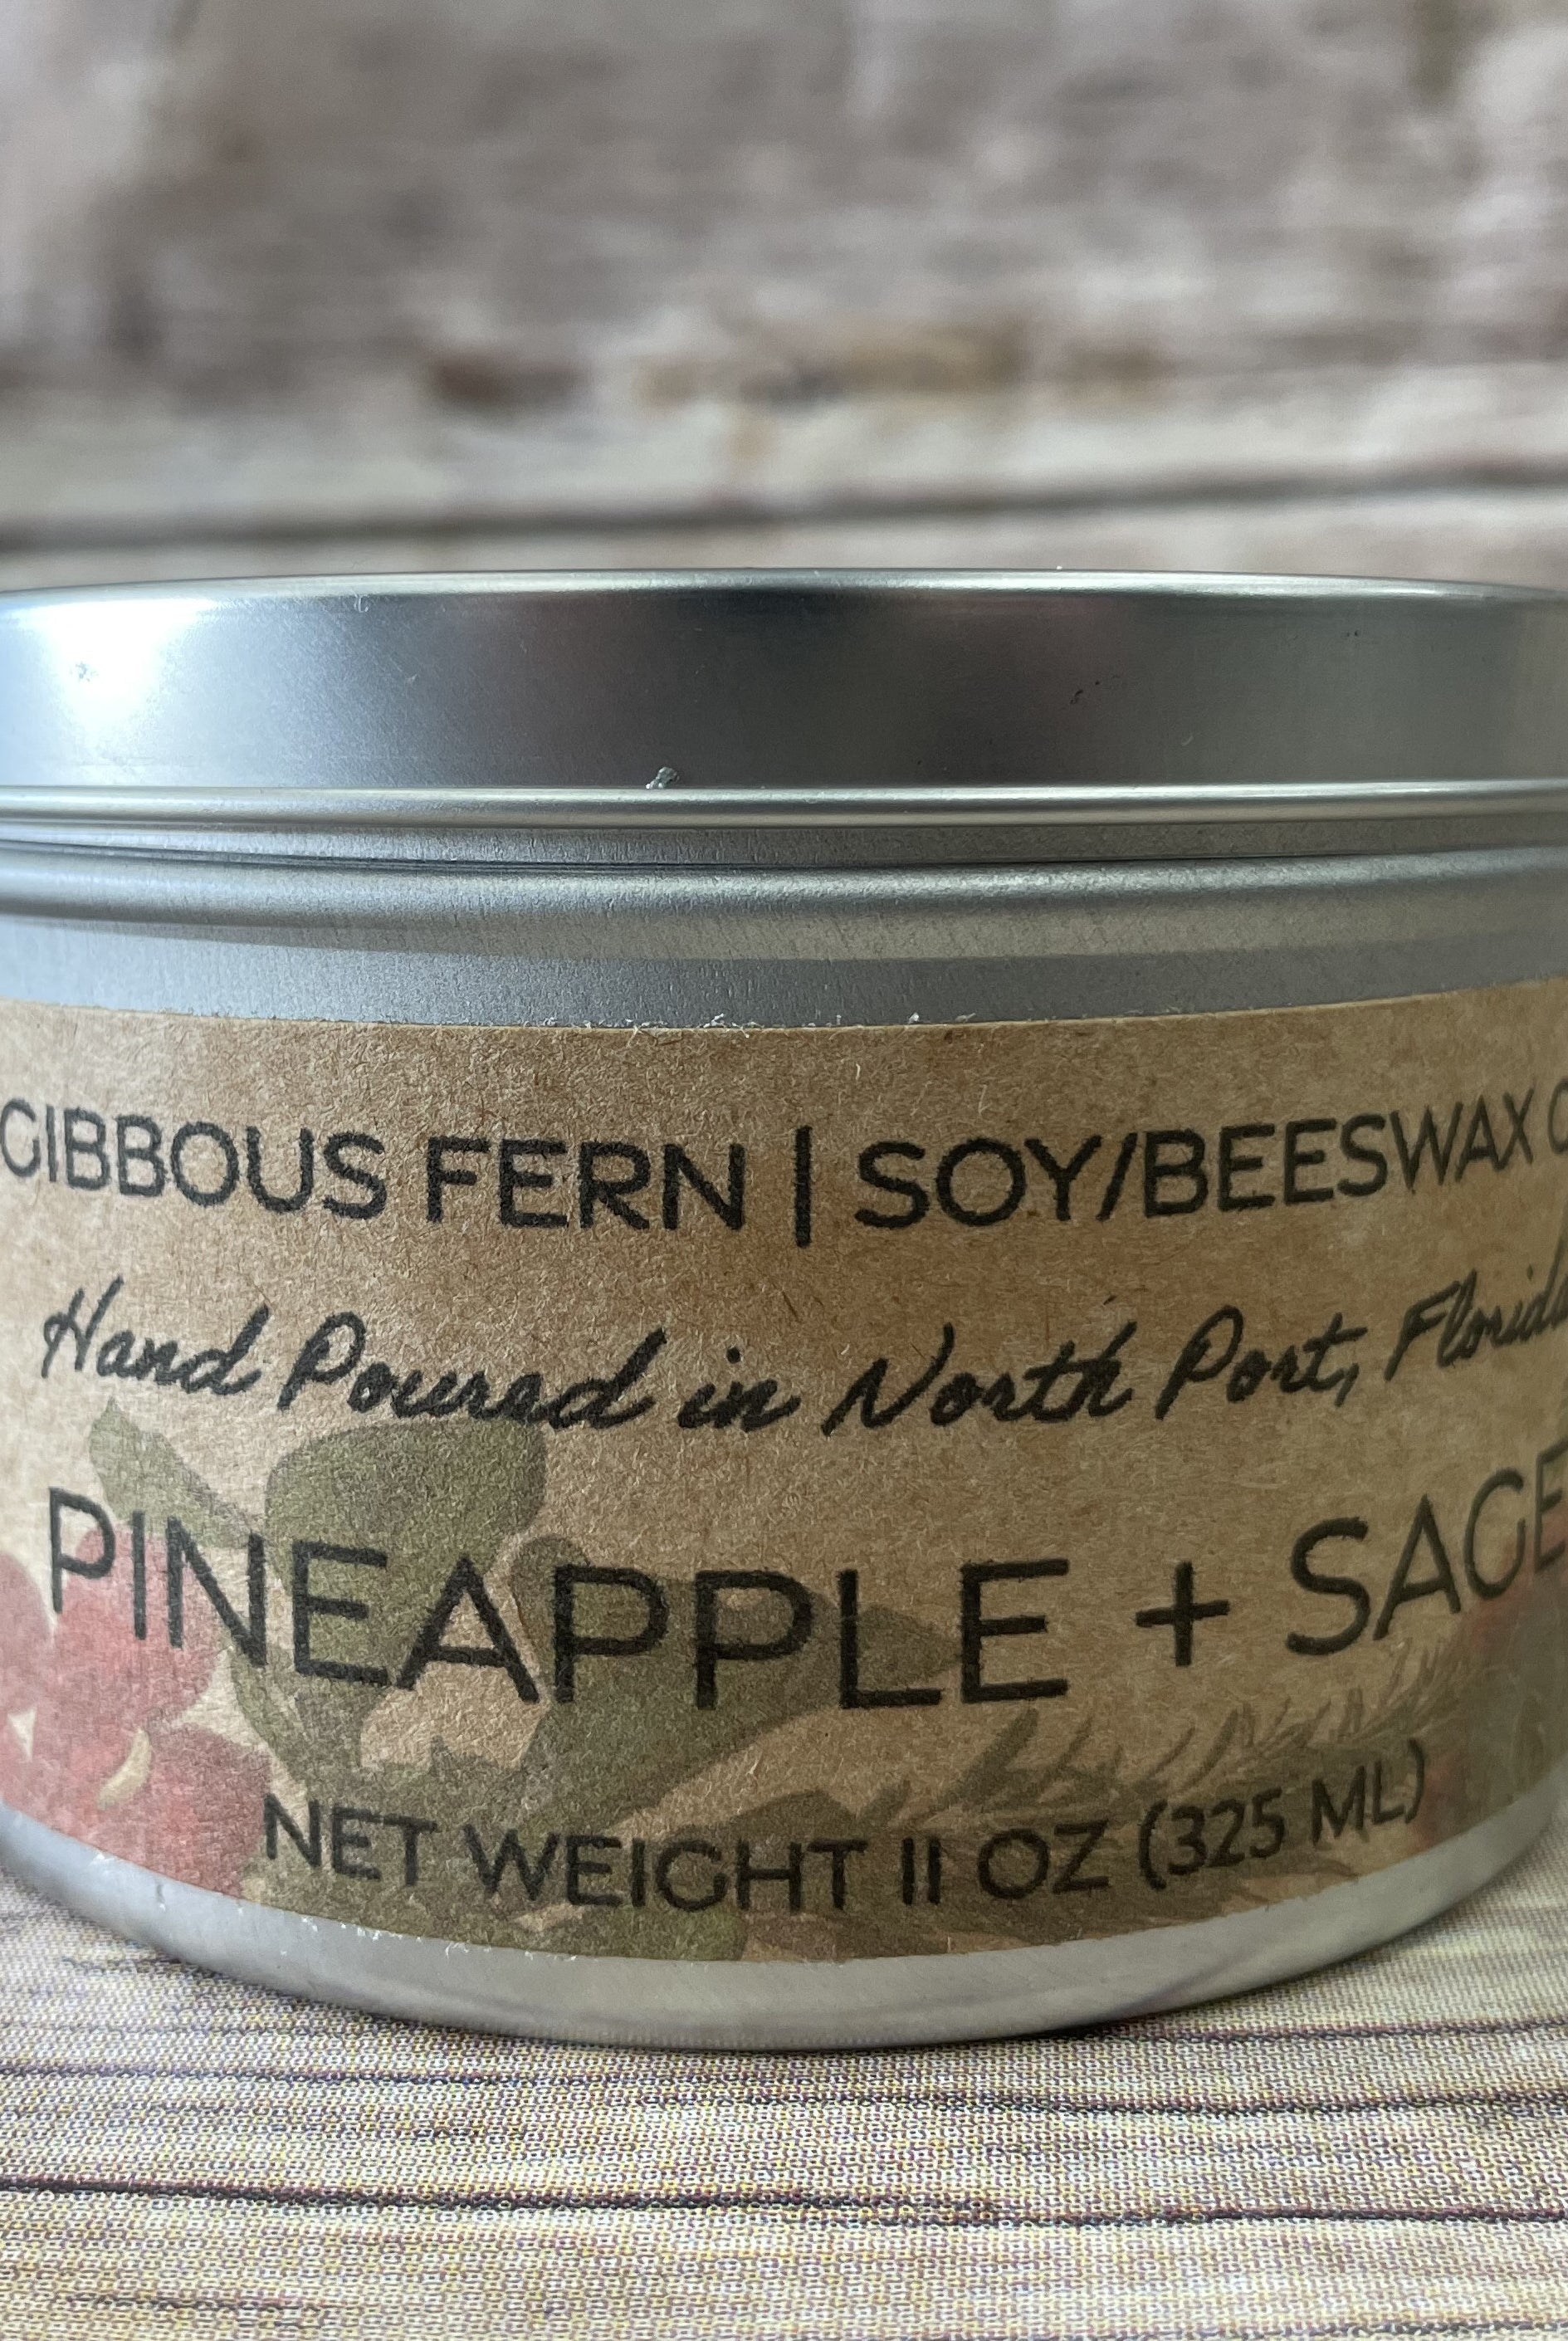 Pineapple + Sage Candle (6 ounces)-Candles-UrbanCulture-Boutique, A North Port, Florida Women's Fashion Boutique